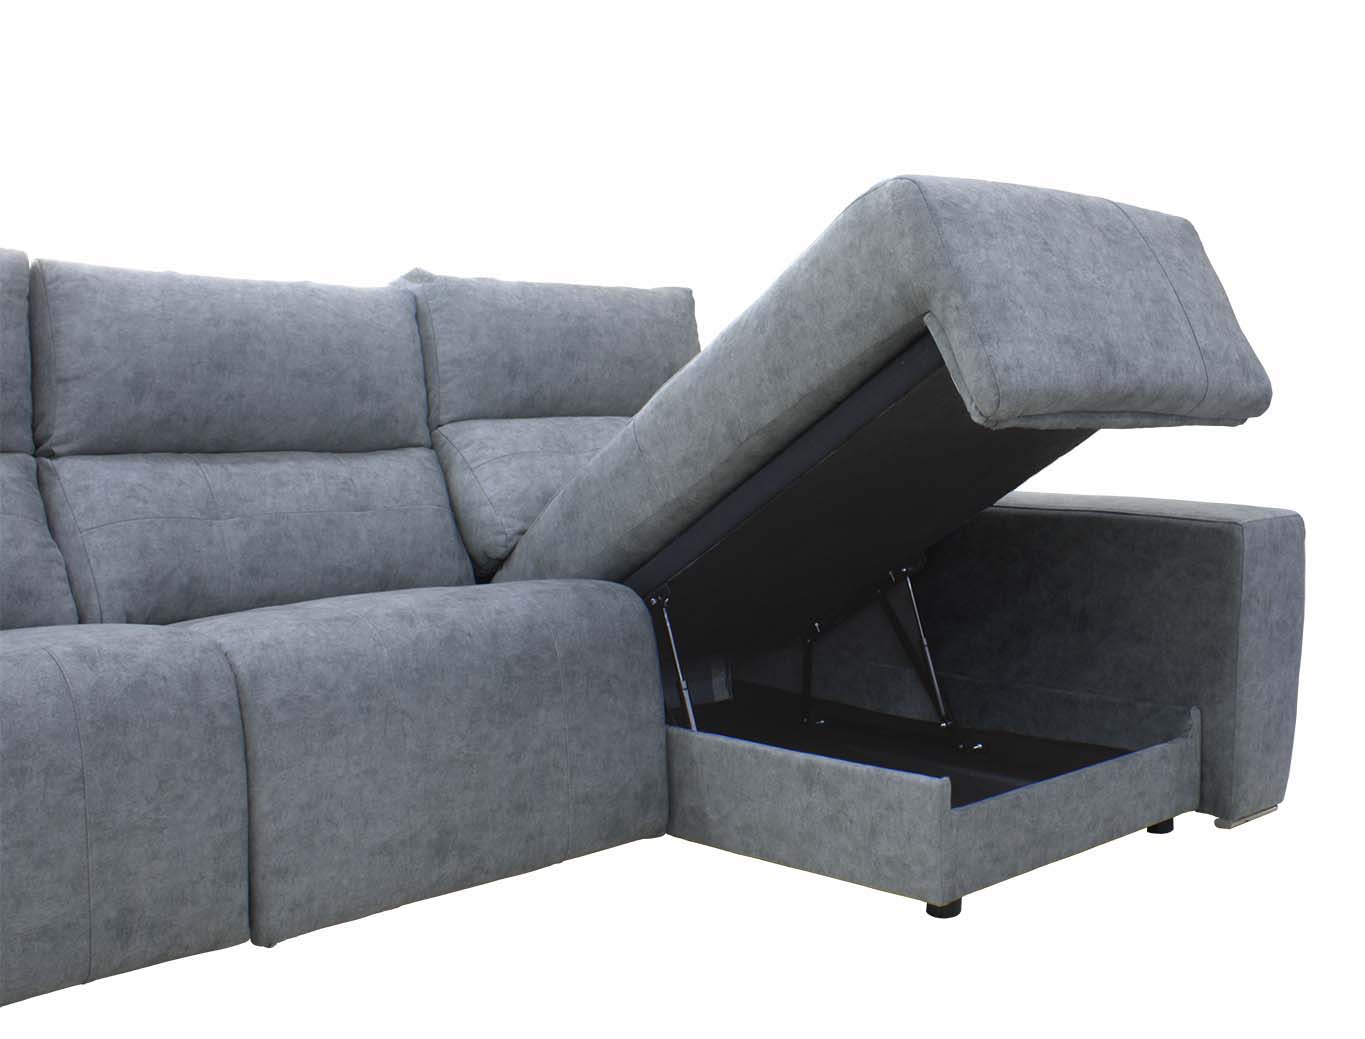 sofa relax con motor Comprar en tienda de muebles baratos